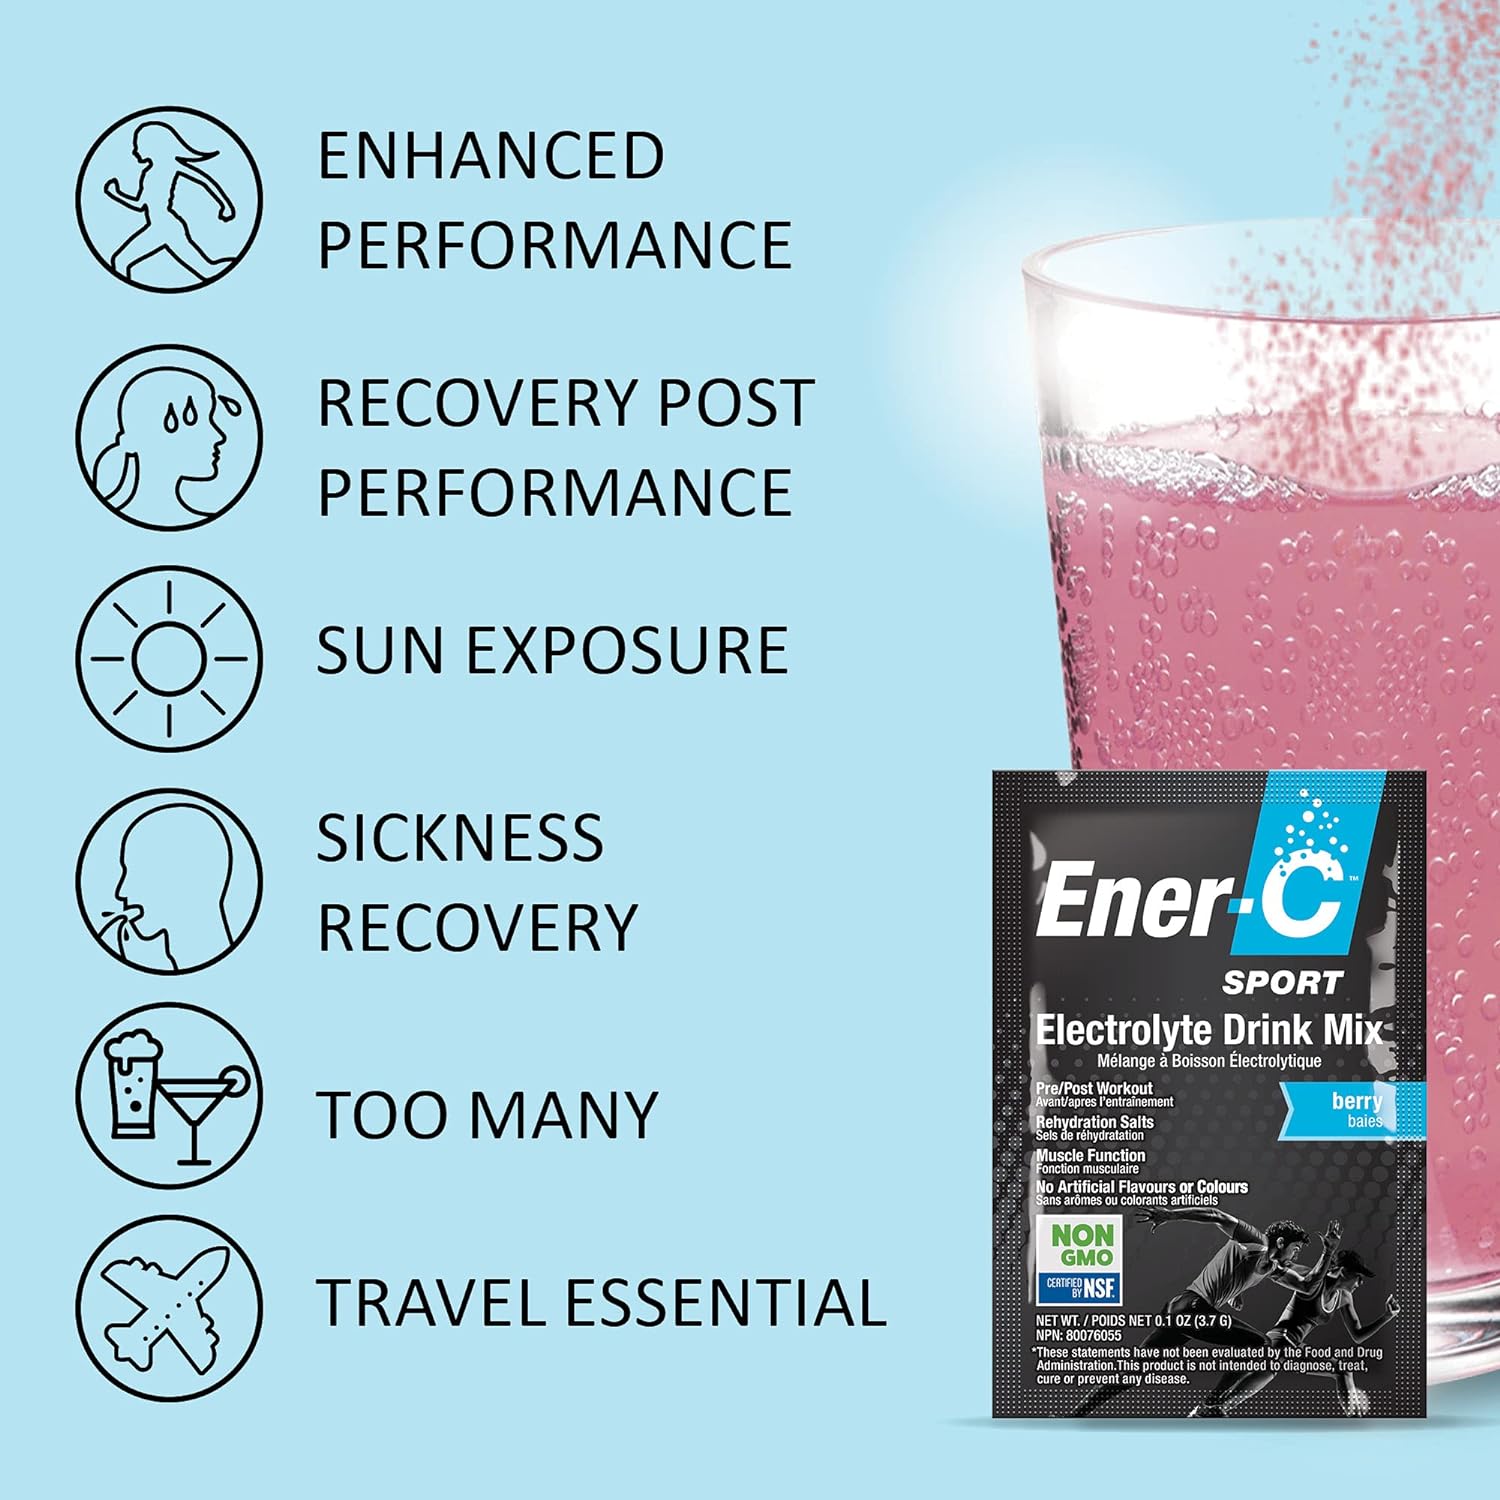 Ener-C Sport - Electrolyte Drink Mix, Non-GMO, Vegan, Real Fruit Juice